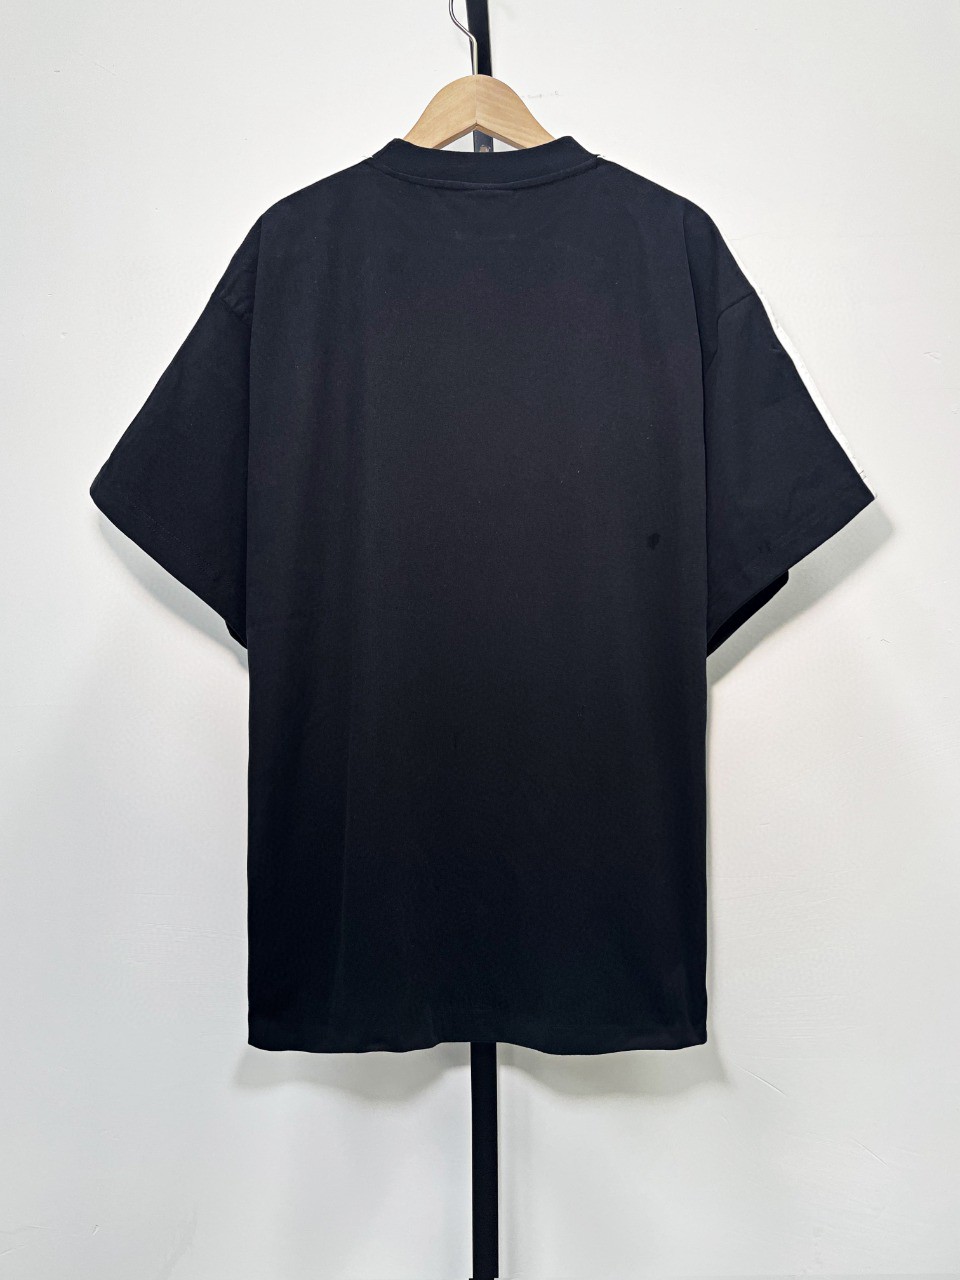 バレンシアガ半袖Tシャツコピーコットン製軽いファッション柔らかい人気ブランド_1